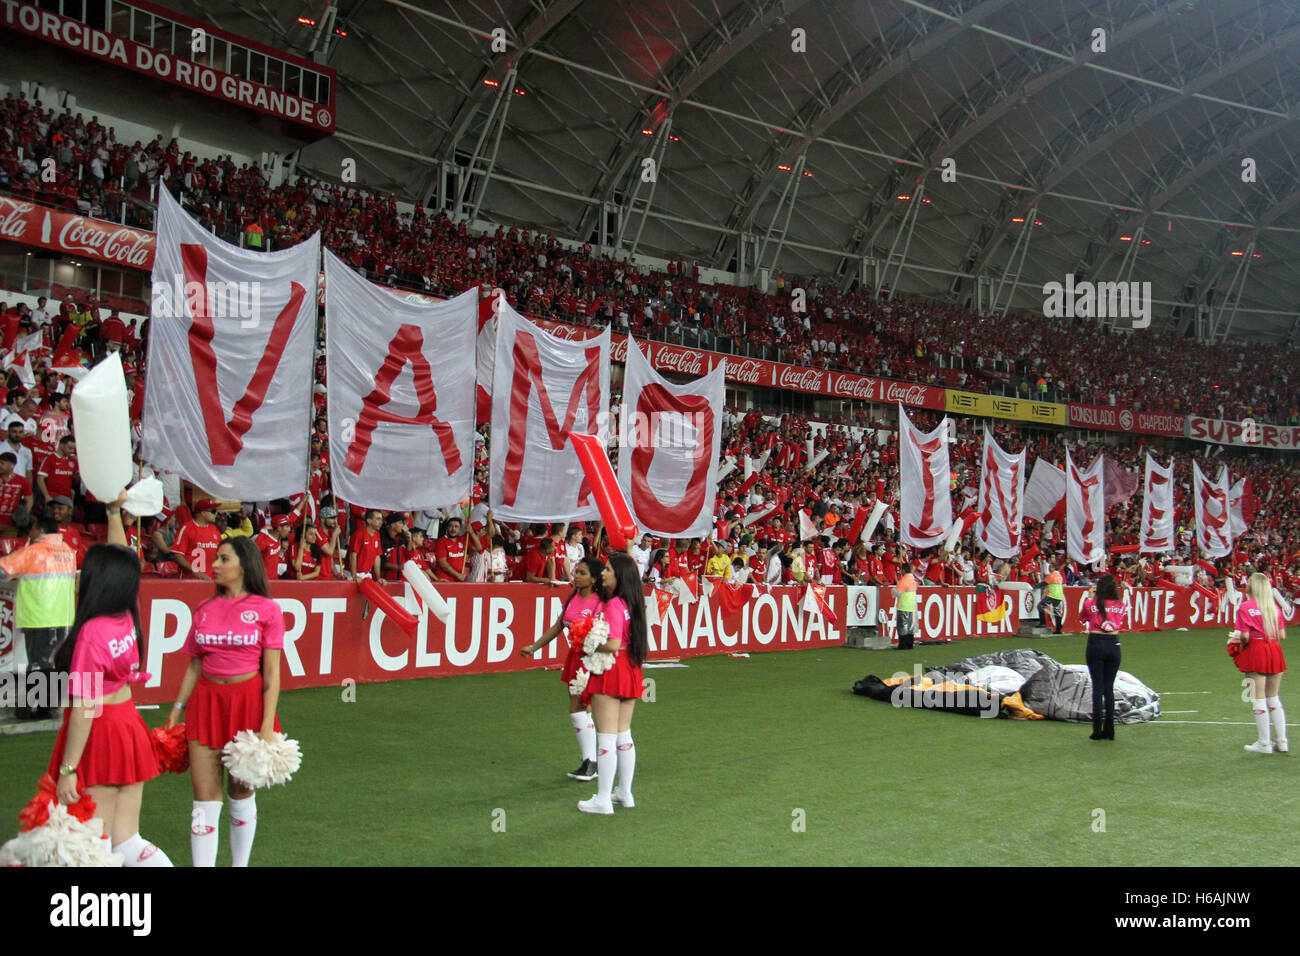 Porto Alegre, Brazil. 26th Oct, 2016. Rio Stadium, Porto Alegre/RS. Credit:  Eldio Suzano/FotoArena/Alamy Live News Stock Photo